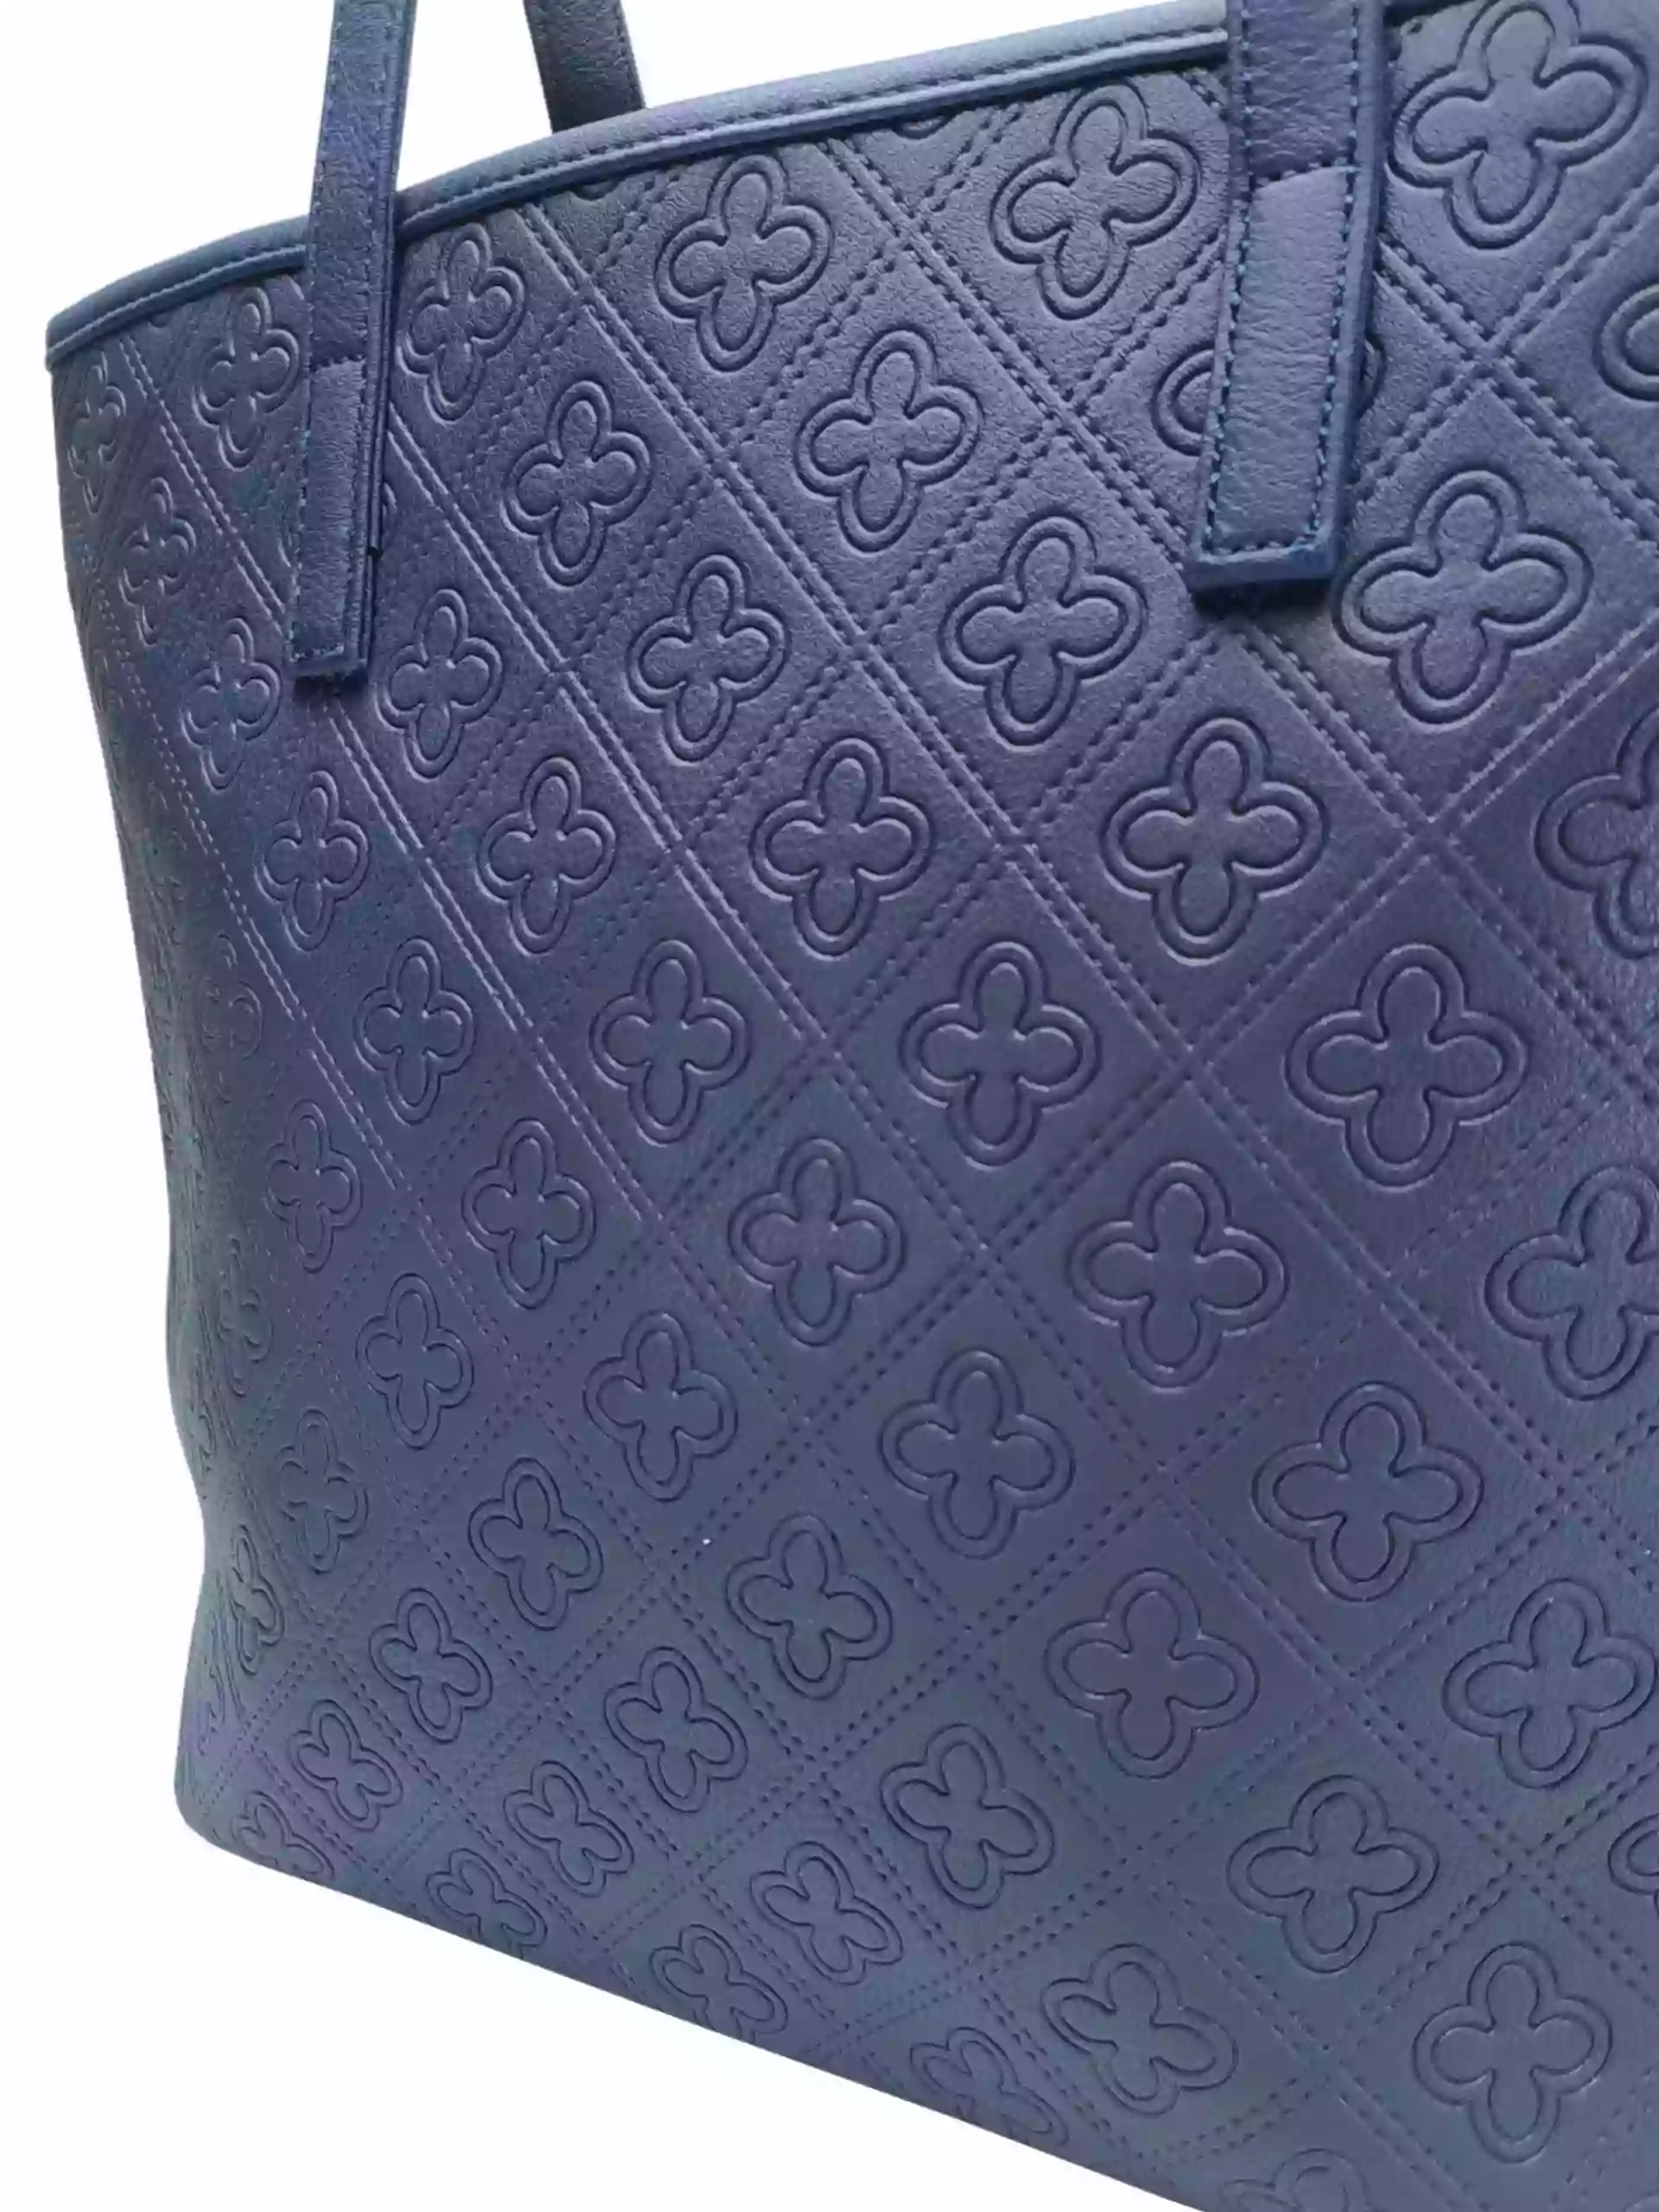 Tmavě modrá dámská kabelka přes rameno se vzory, Tapple, H22505, detail strany kabelky